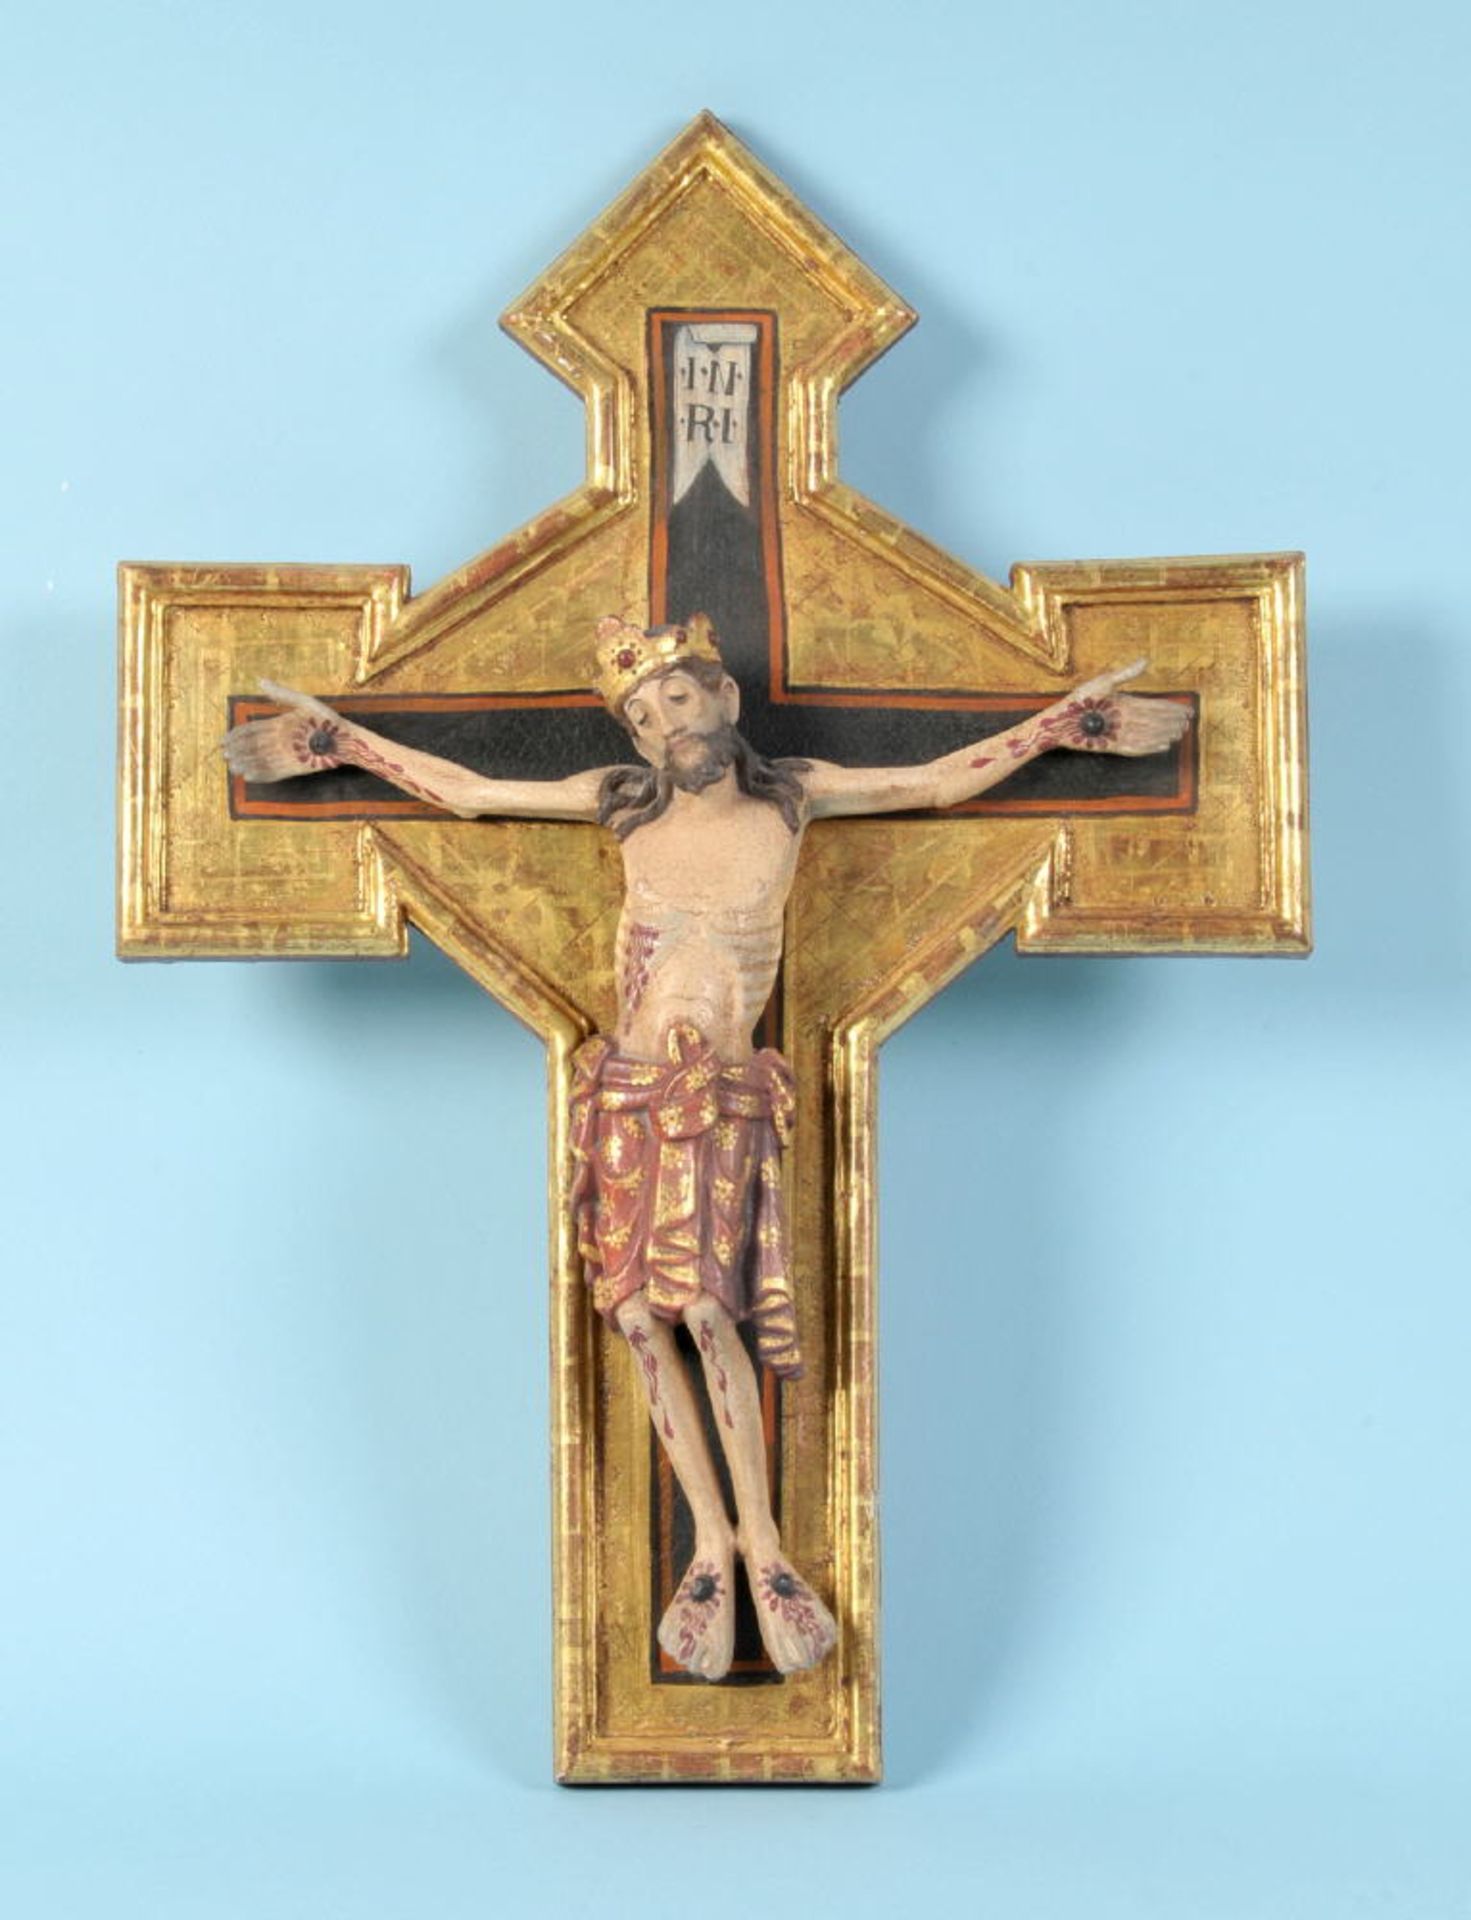 Christus-Korpus mit KreuzHolz, farbig gefasst, teilw. vergoldet, H= 46,5 cm, im romanischen Stil